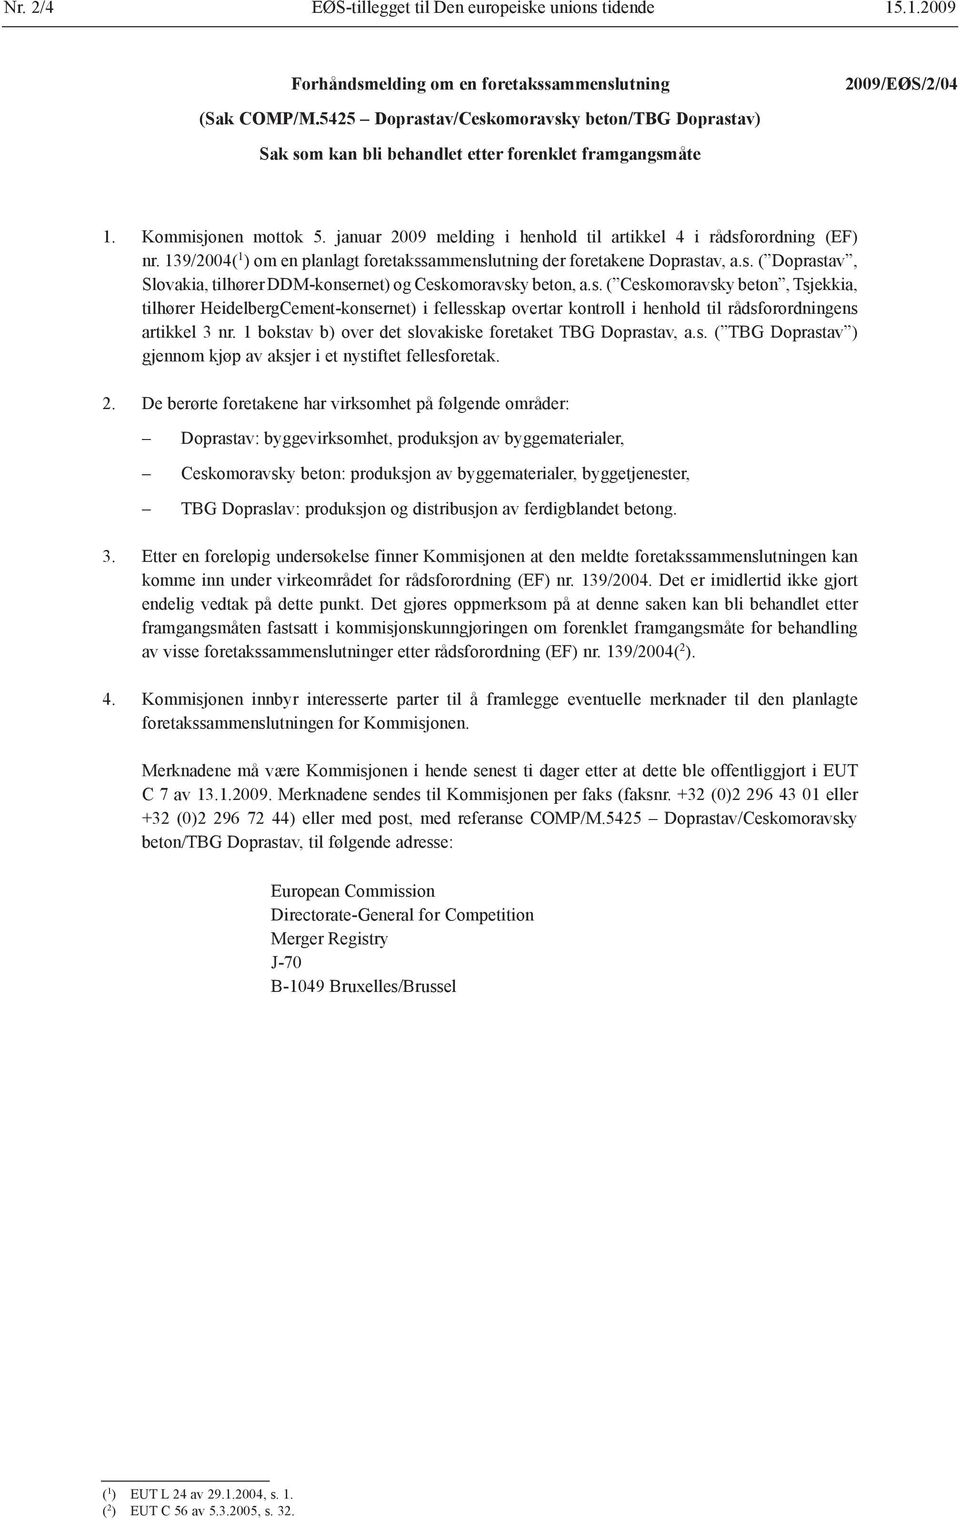 januar 2009 melding i henhold til artikkel 4 i rådsforordning (EF) nr. 139/2004( 1 ) om en planlagt foretakssammenslutning der foretakene Doprastav, a.s. ( Doprastav, Slovakia, tilhører DDM-konsernet) og Ceskomoravsky beton, a.